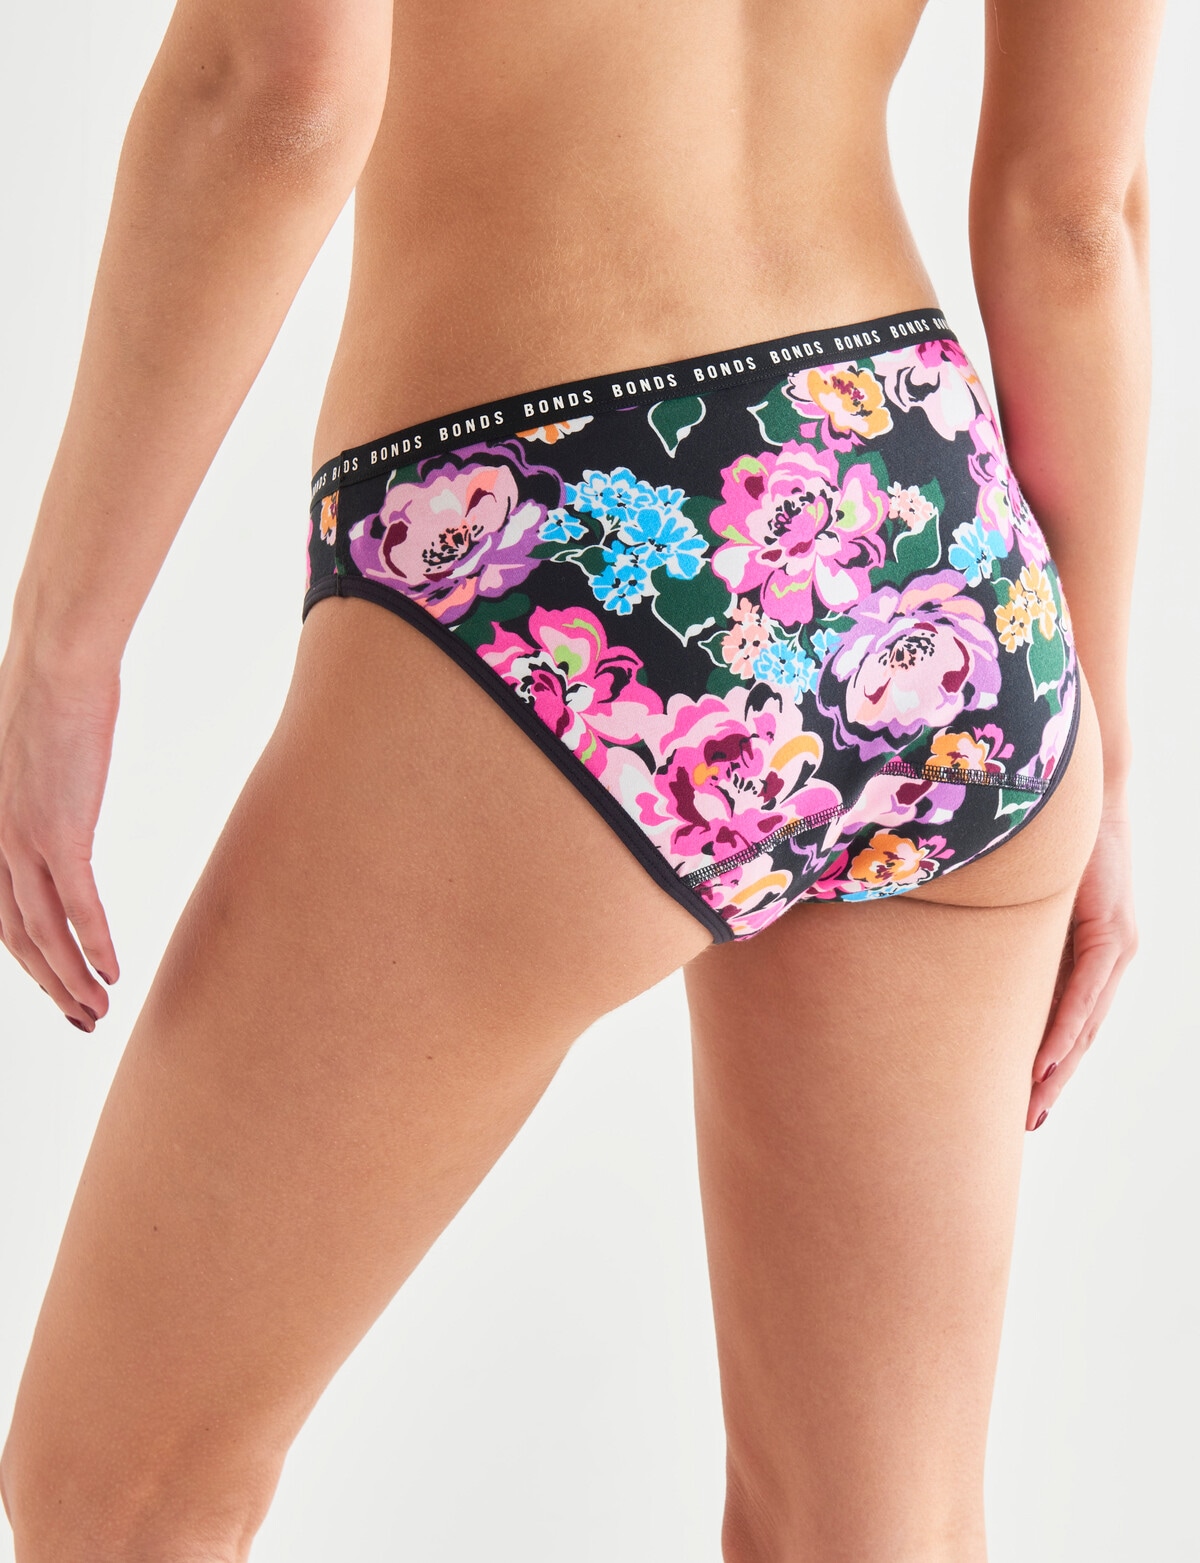 Bonds Bloody Comfy Period Undies Bikini Brief, Moderate, Super Floral -  Briefs